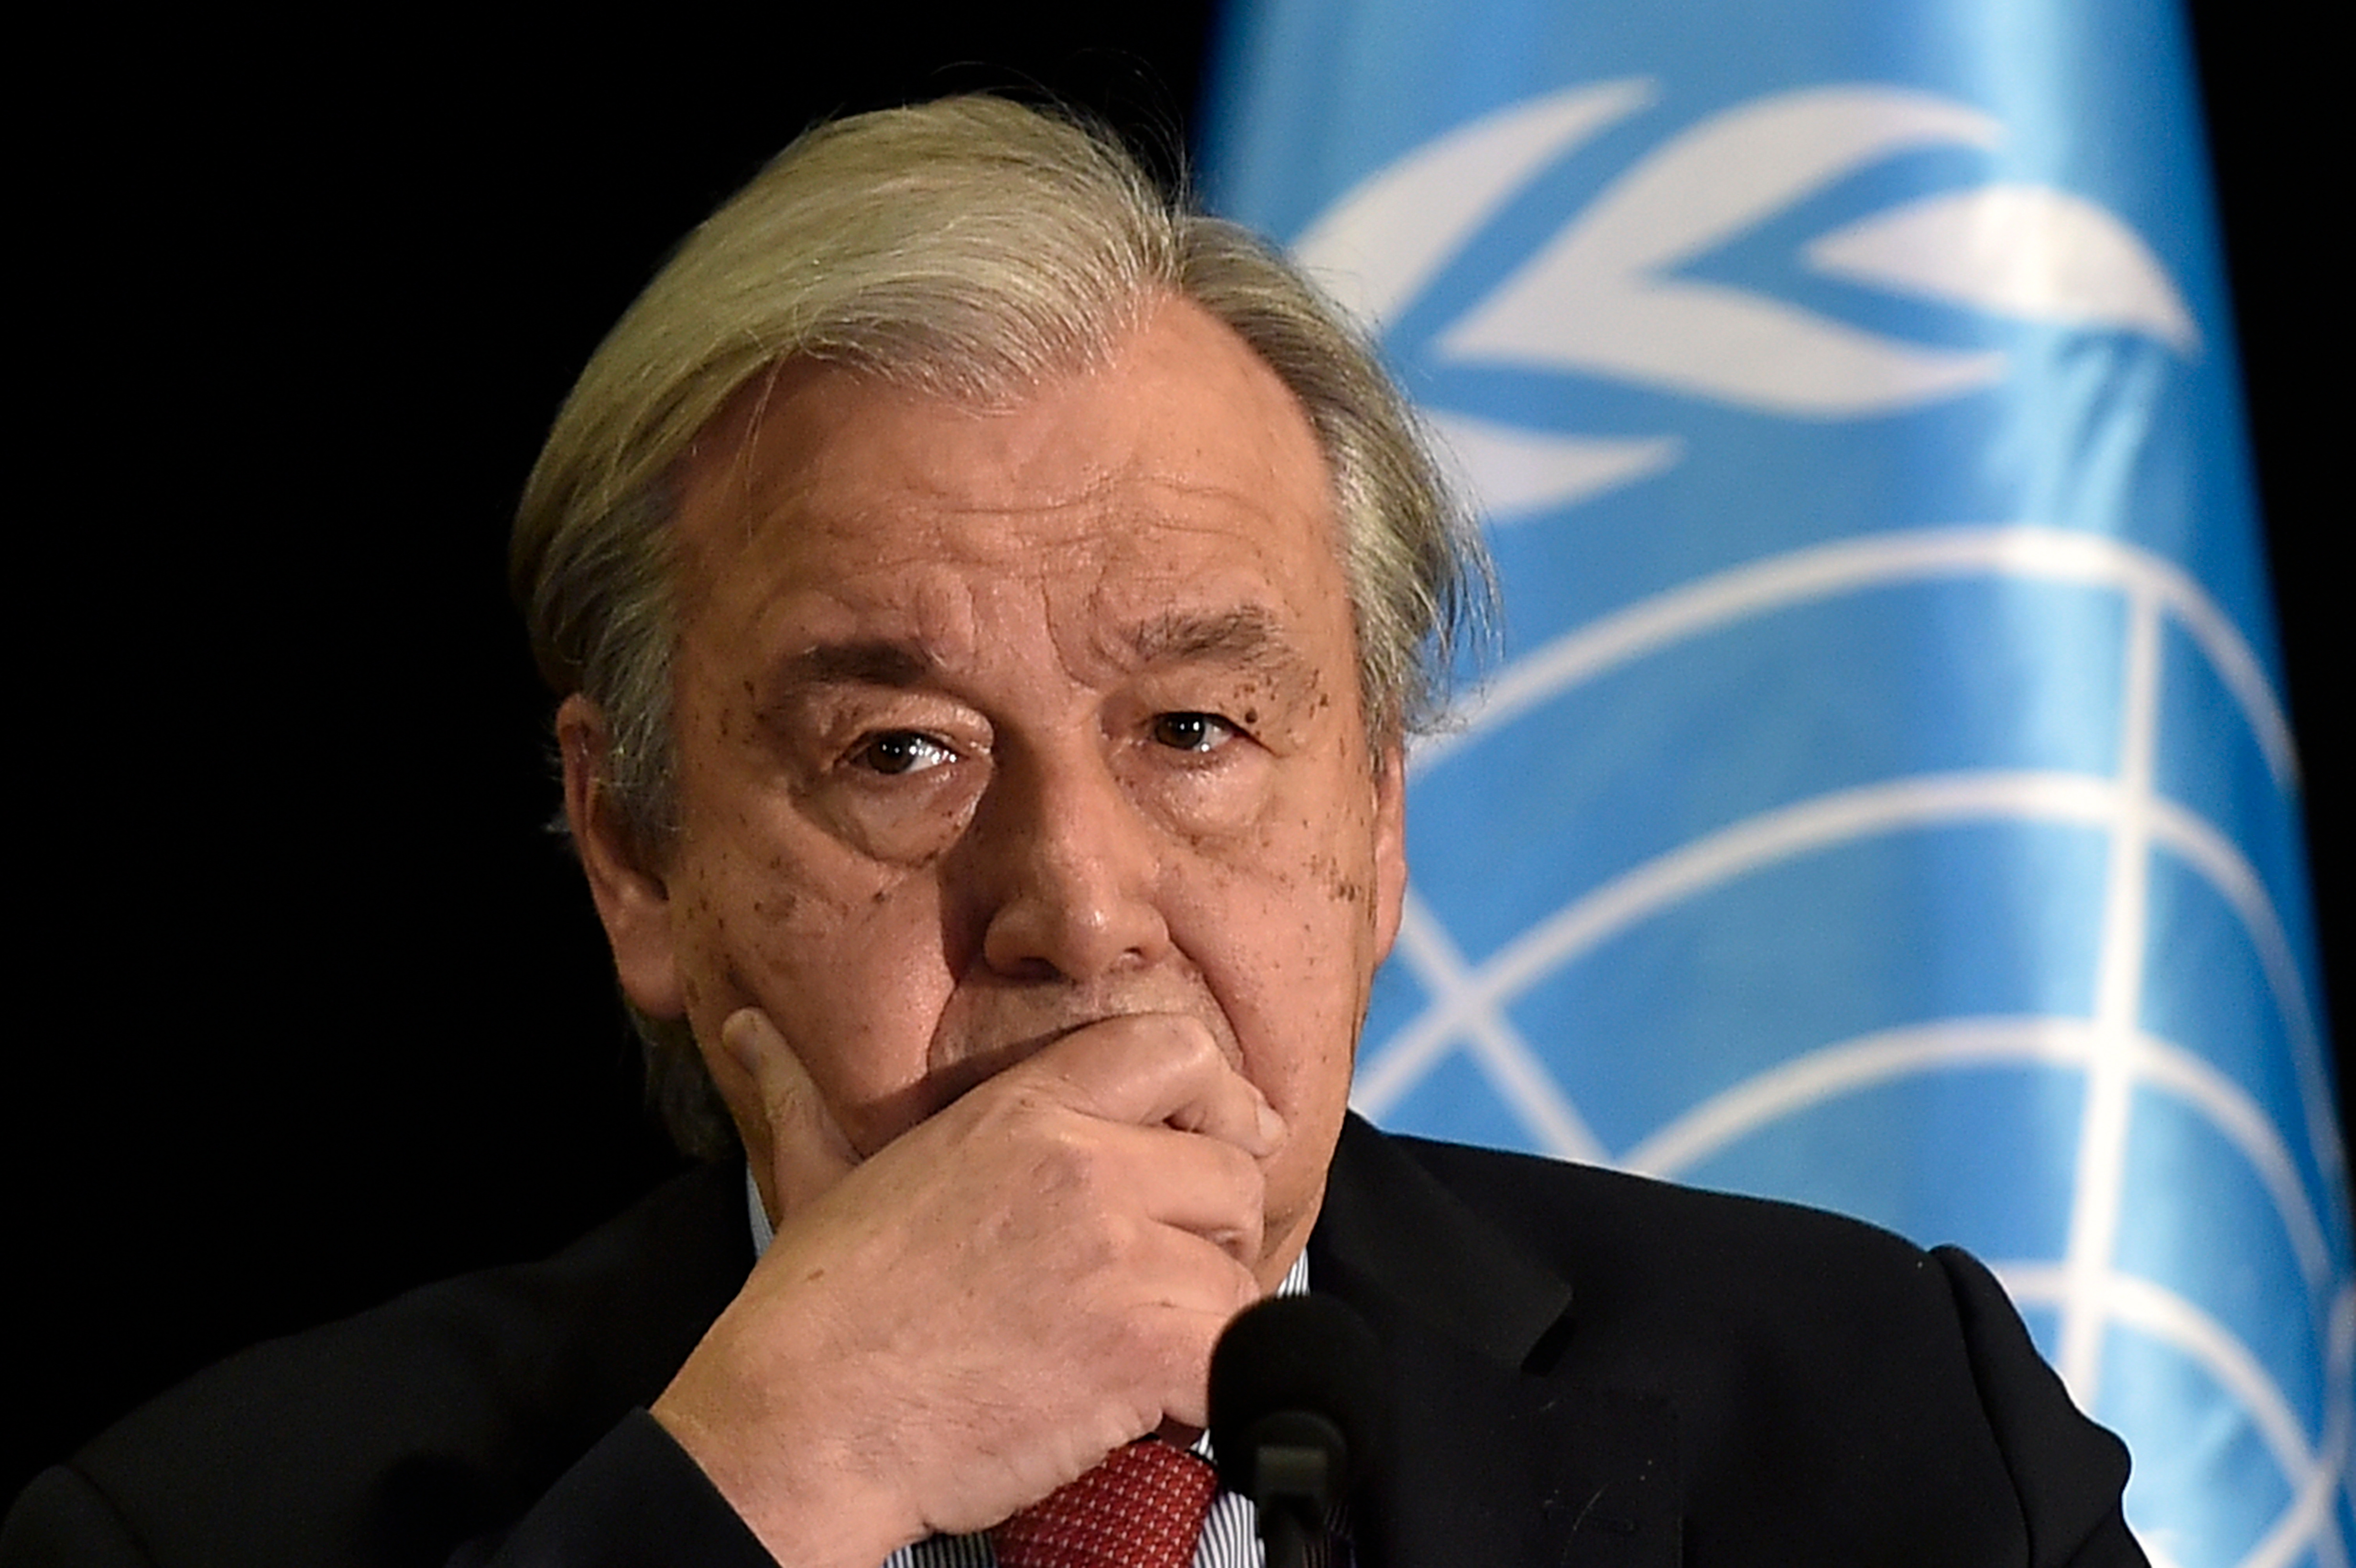 La ONU anuncia más ayuda humanitaria a Ucrania y trata de mediar para detener la guerra